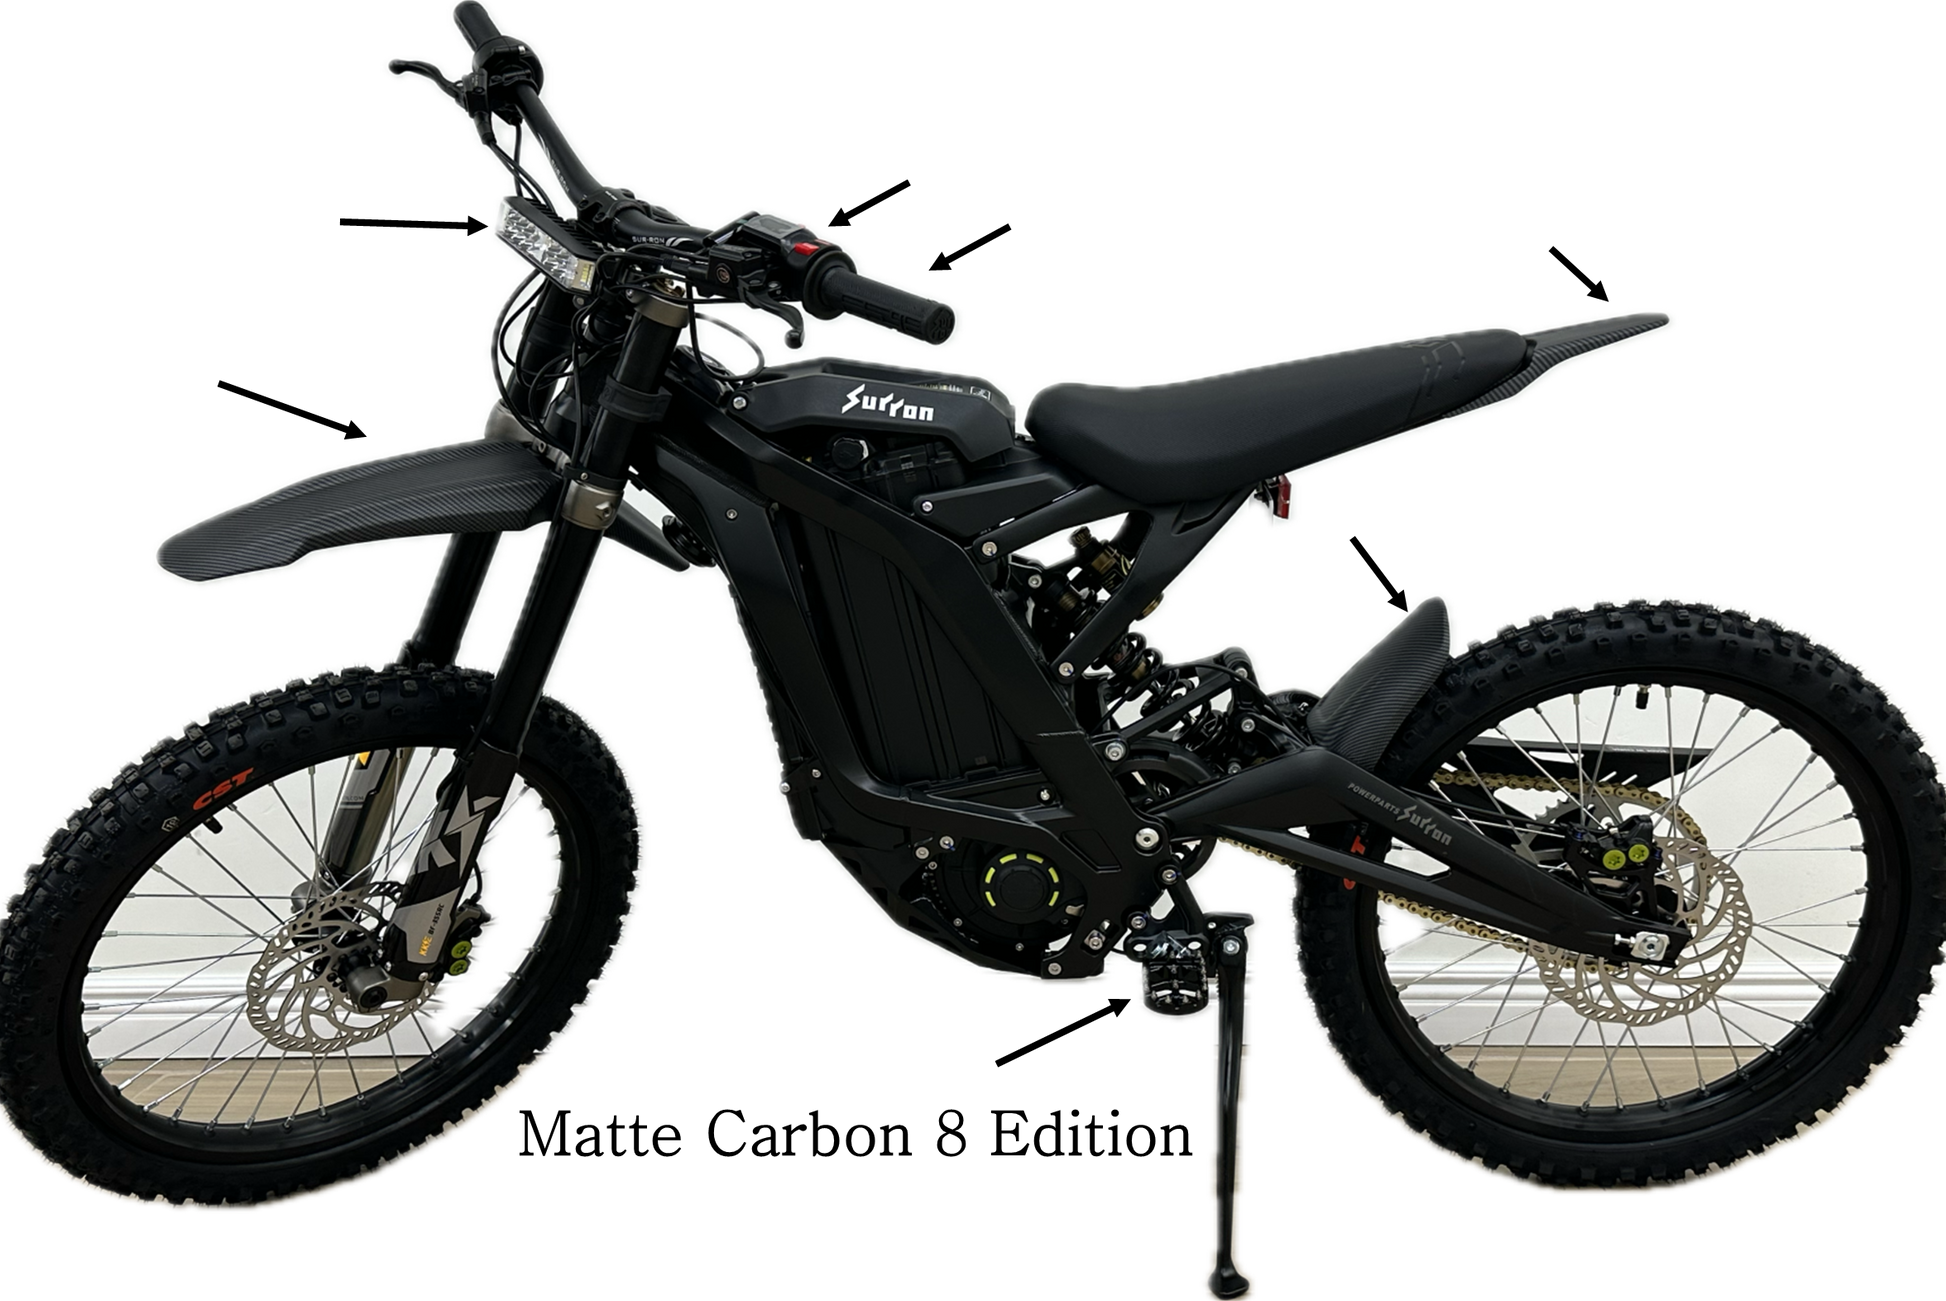 Black Dirt Bike with Matte Carbon Fiber Fenders Surron Light Bee X LBX